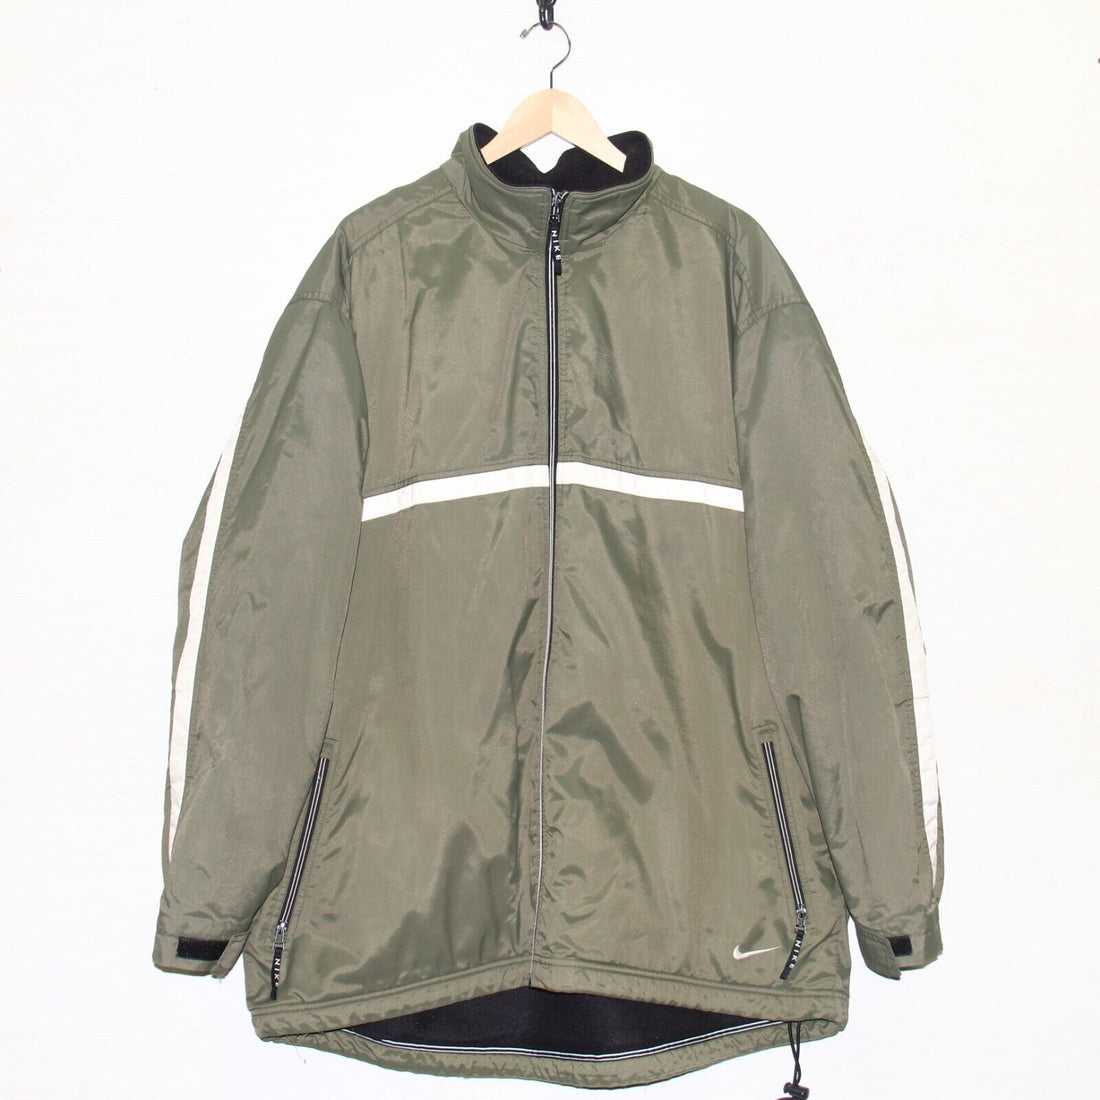 Vintage Nike Light Windbreaker Jacket Size 2XL Olive Green Fleece Lined